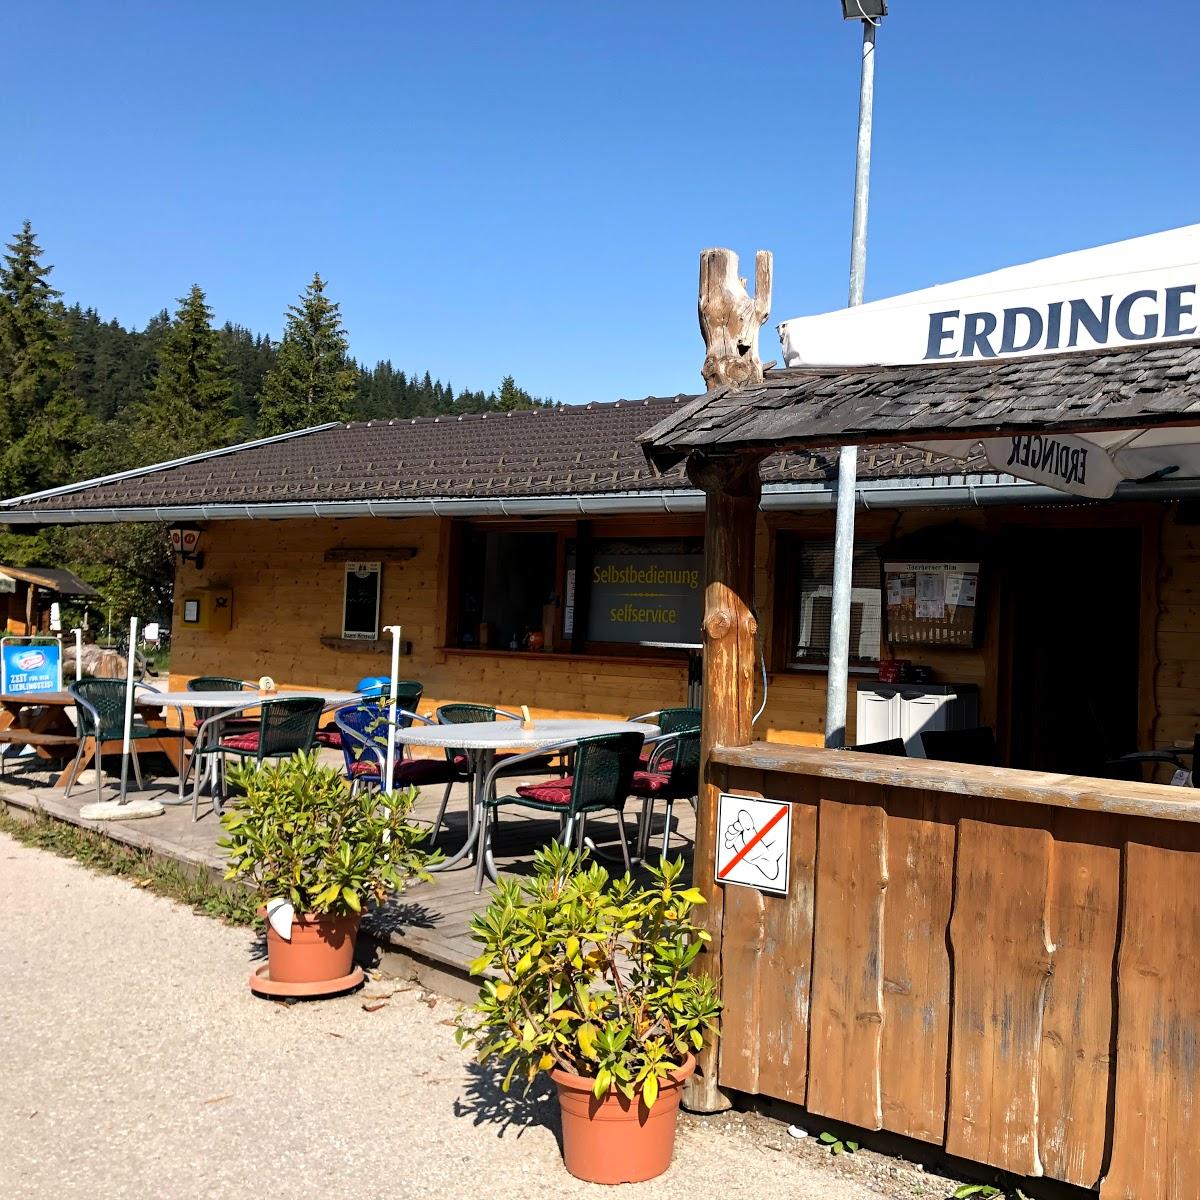 Restaurant "Isarhorner Alm" in  Mittenwald